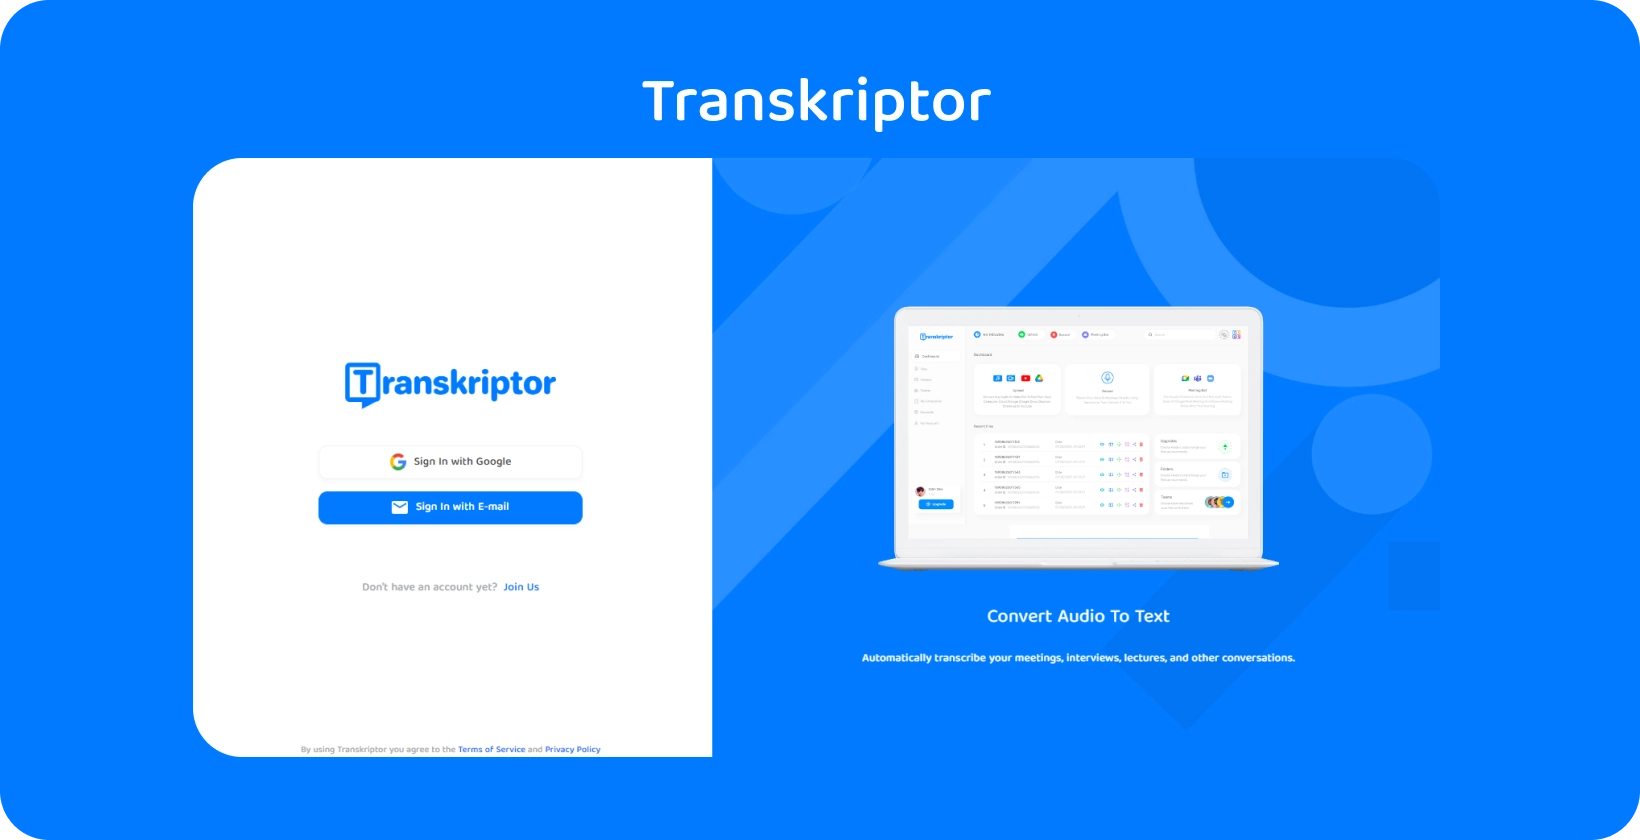 Transkriptor appgränssnitt som visar enkla ljud-till-text-transkriptionstjänster för medicinska journalinsikter.